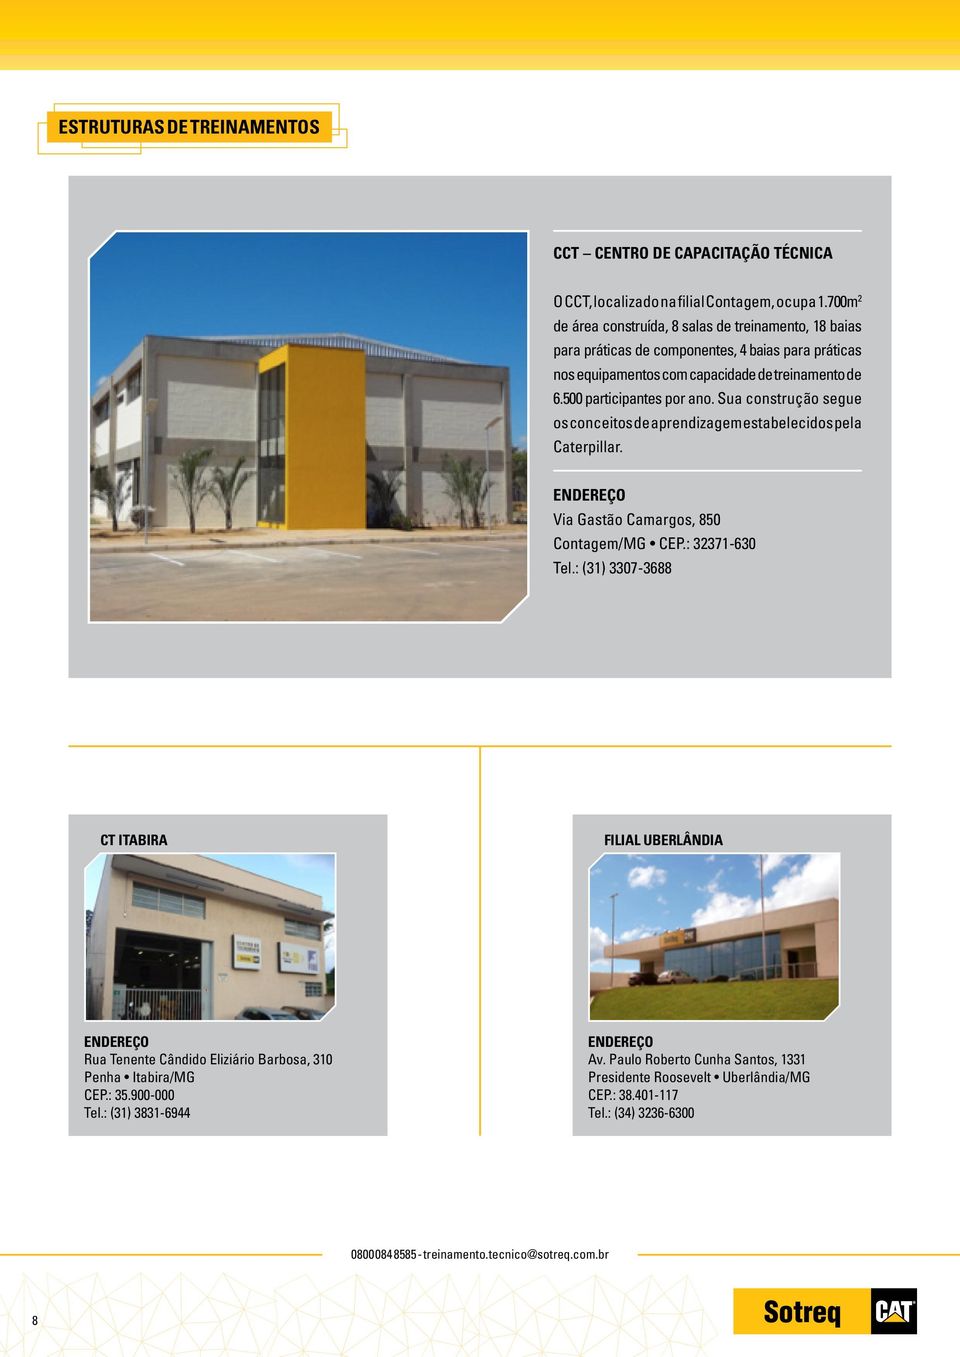 Sua construção segue os conceitos de aprendizagem estabelecidos pela Caterpillar. ENDEREÇO Via Gastão Camargos, 850 Contagem/MG CEP.: 32371-630 Tel.